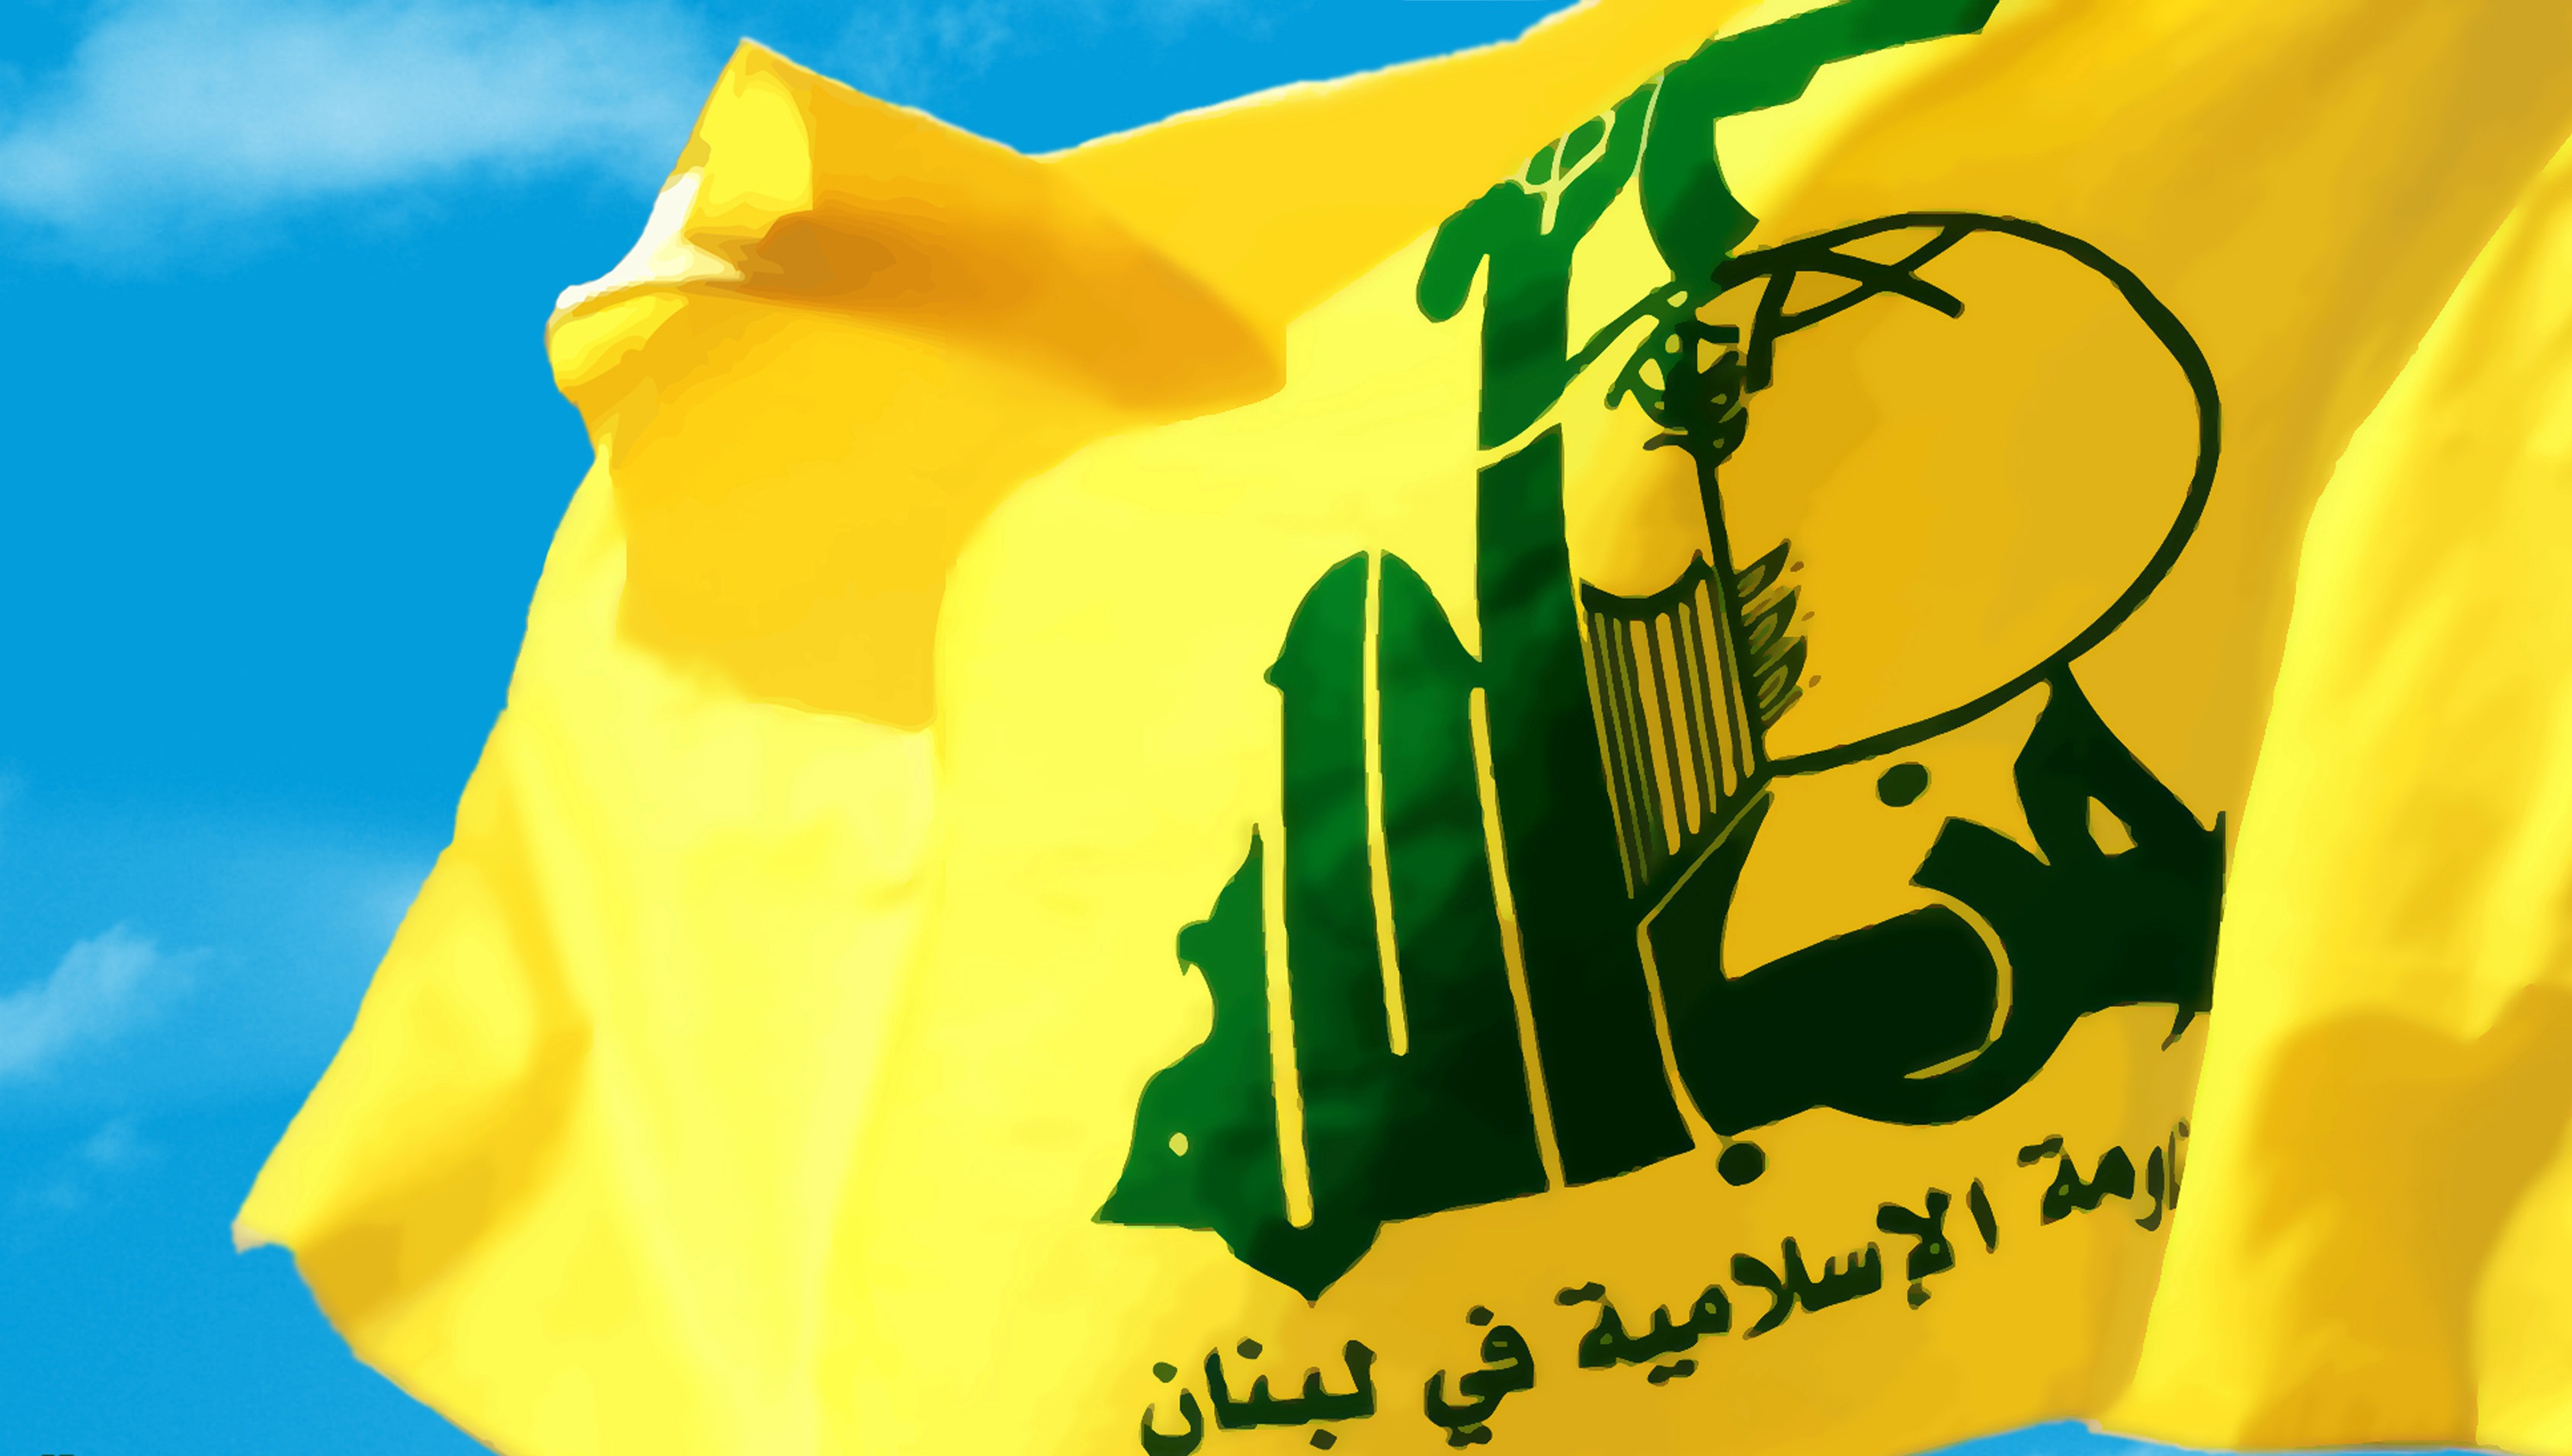 جزئیات دیدار هیئت انصار الله یمن با حزب الله لبنان